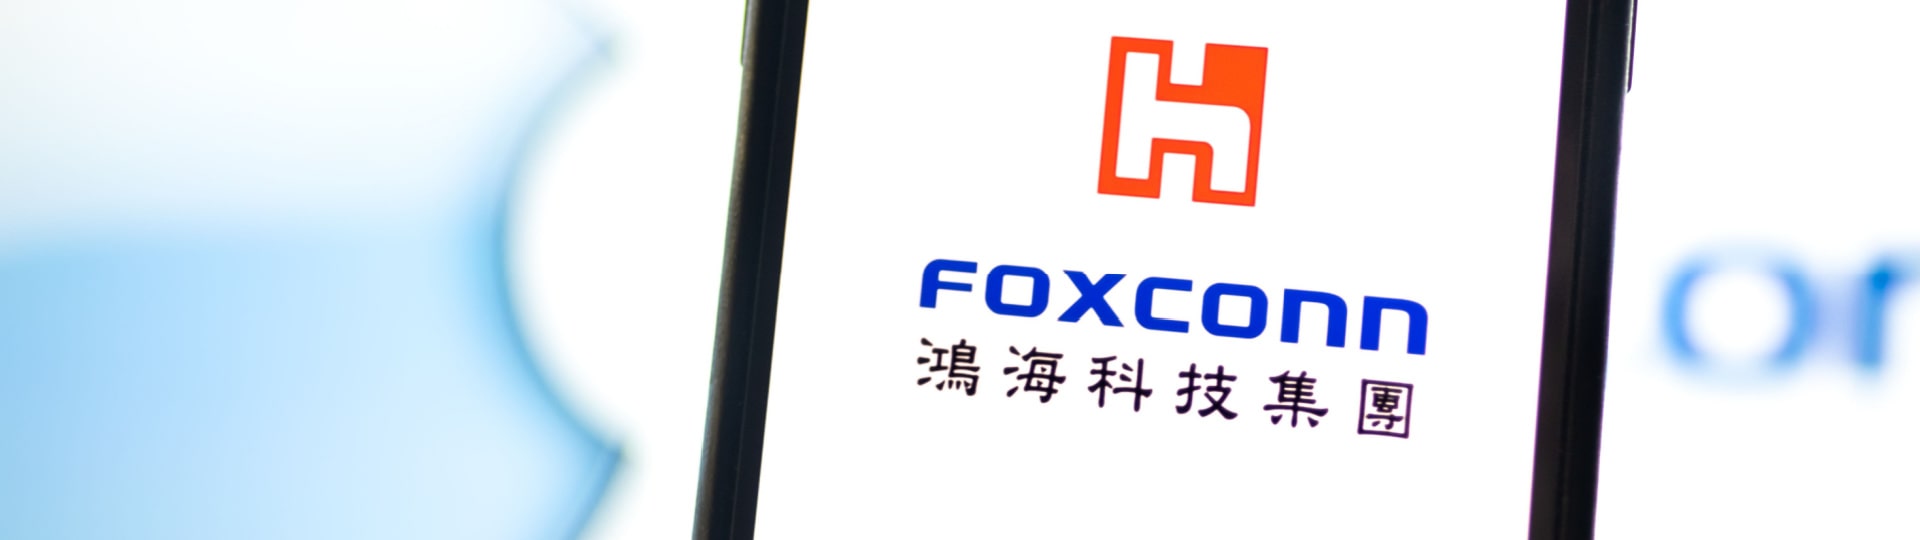 Čtvrtletní zisk společnosti Foxconn překonal očekávání analytiků